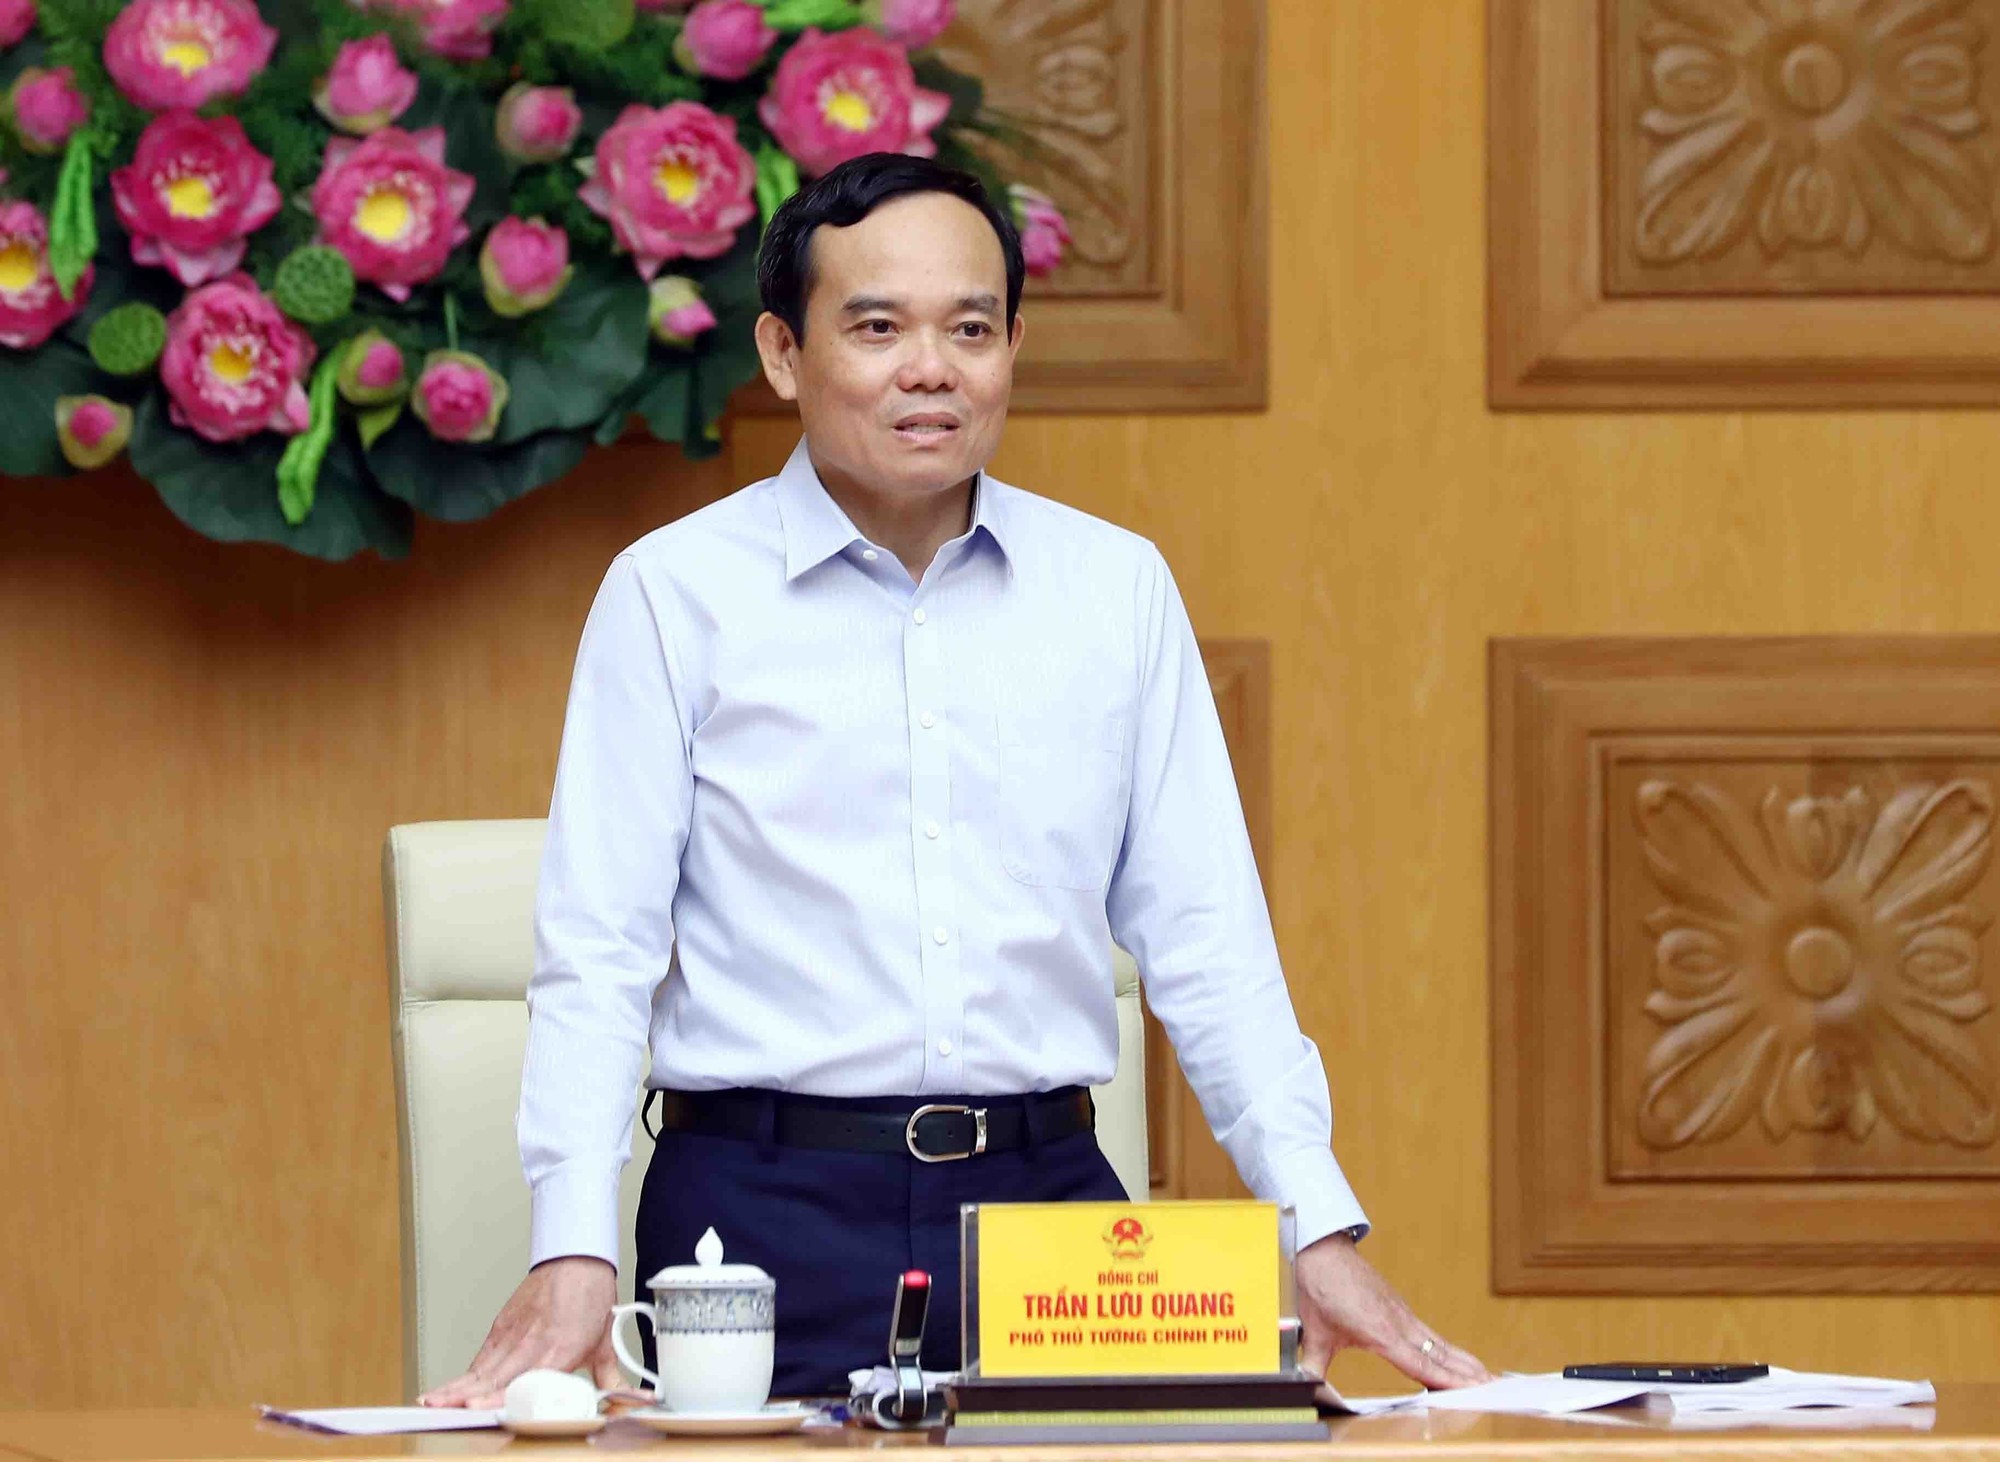 Phó Thủ tướng Trần Lưu Quang: Trước 10/8, phải ban hành 2 thông tư làm căn cứ xây dựng Đề án vị trí việc làm công chức, viên chức - Ảnh 1.